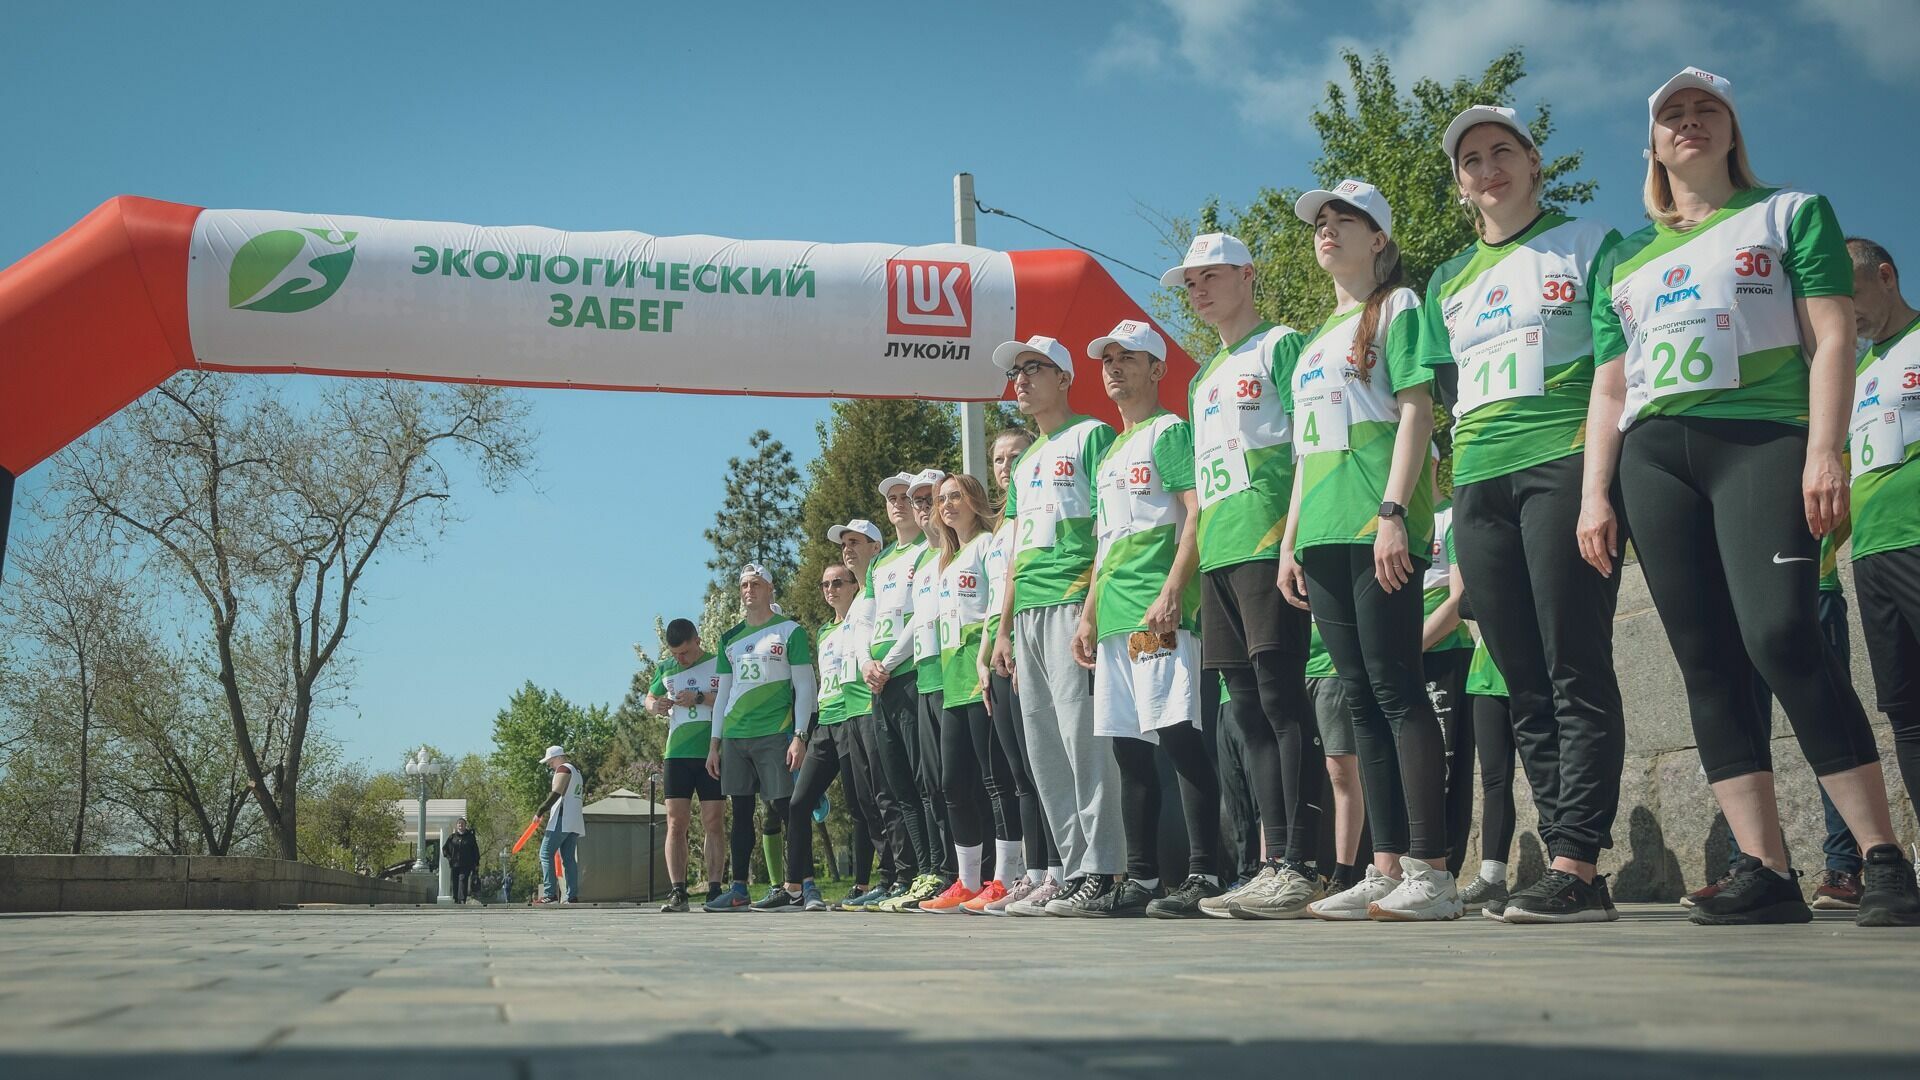 Праздник спорта и экологии: в Волгограде прошел забег с участием олимпийского призера